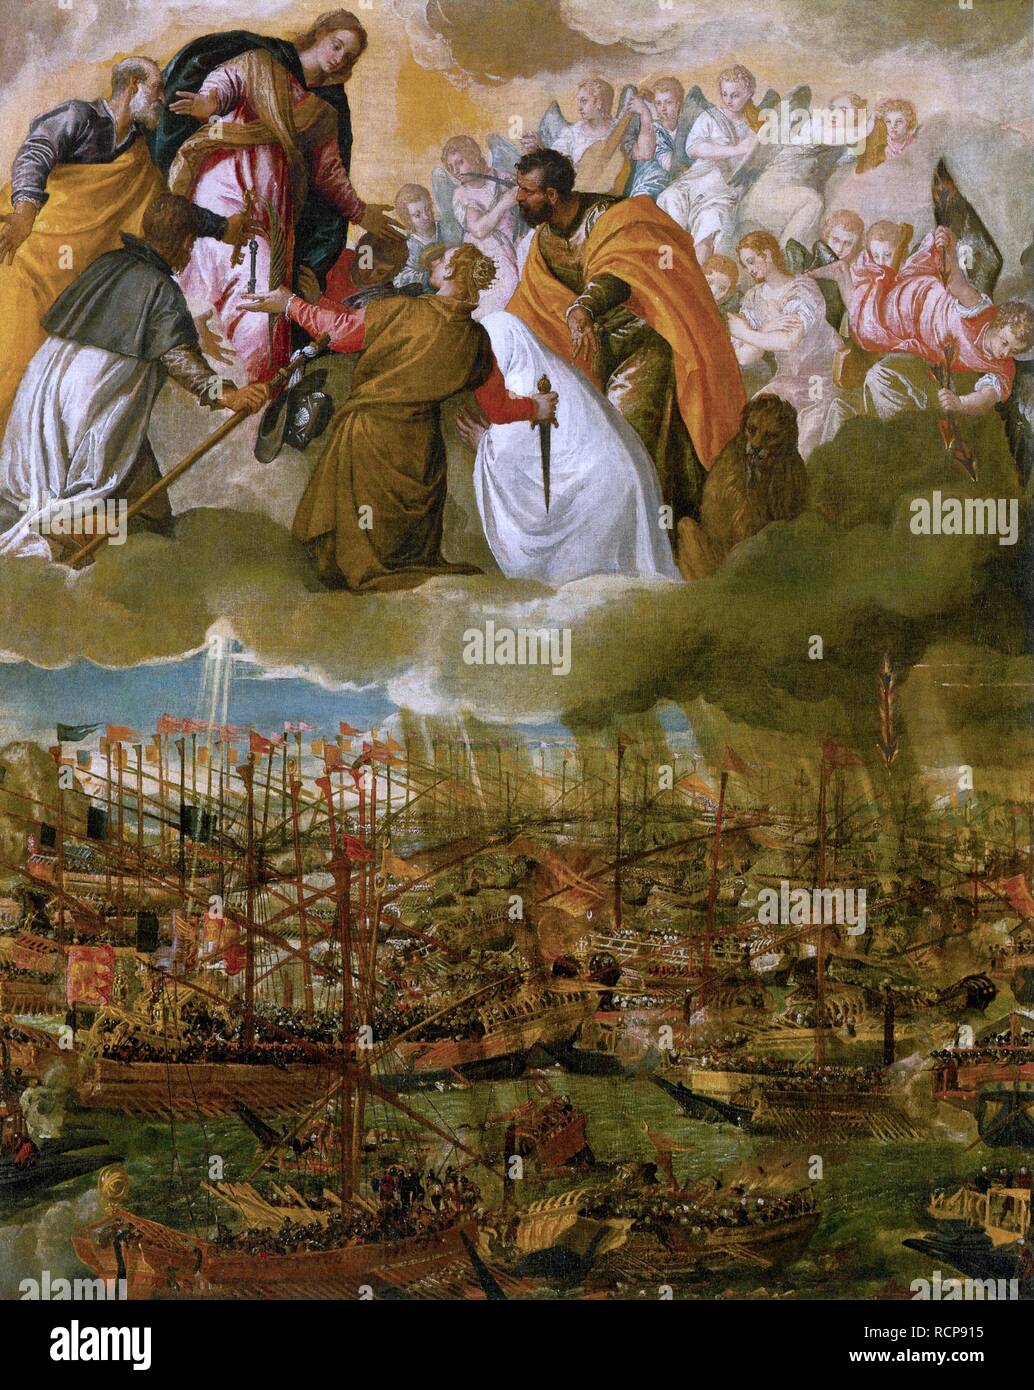 Allegorie der Schlacht von Lepanto. Museum: Gallerie dell'Accademia, Venedig. Autor: Veronese, Paolo. Stockfoto